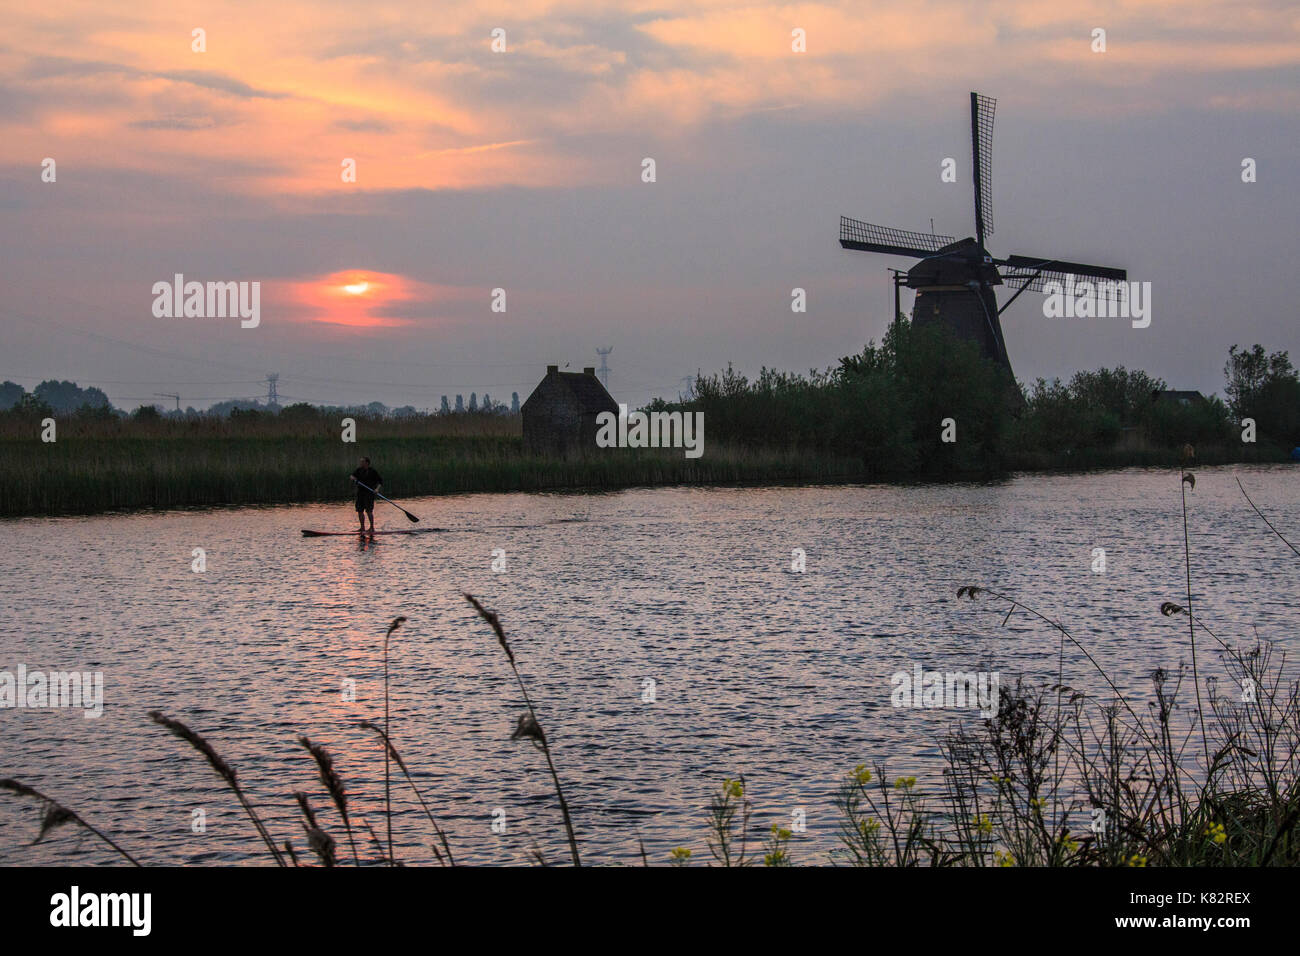 Lever de Soleil sur le moulin reflète dans le canal kinderdijk rotterdam Pays-Bas Hollande du Sud Europe Banque D'Images